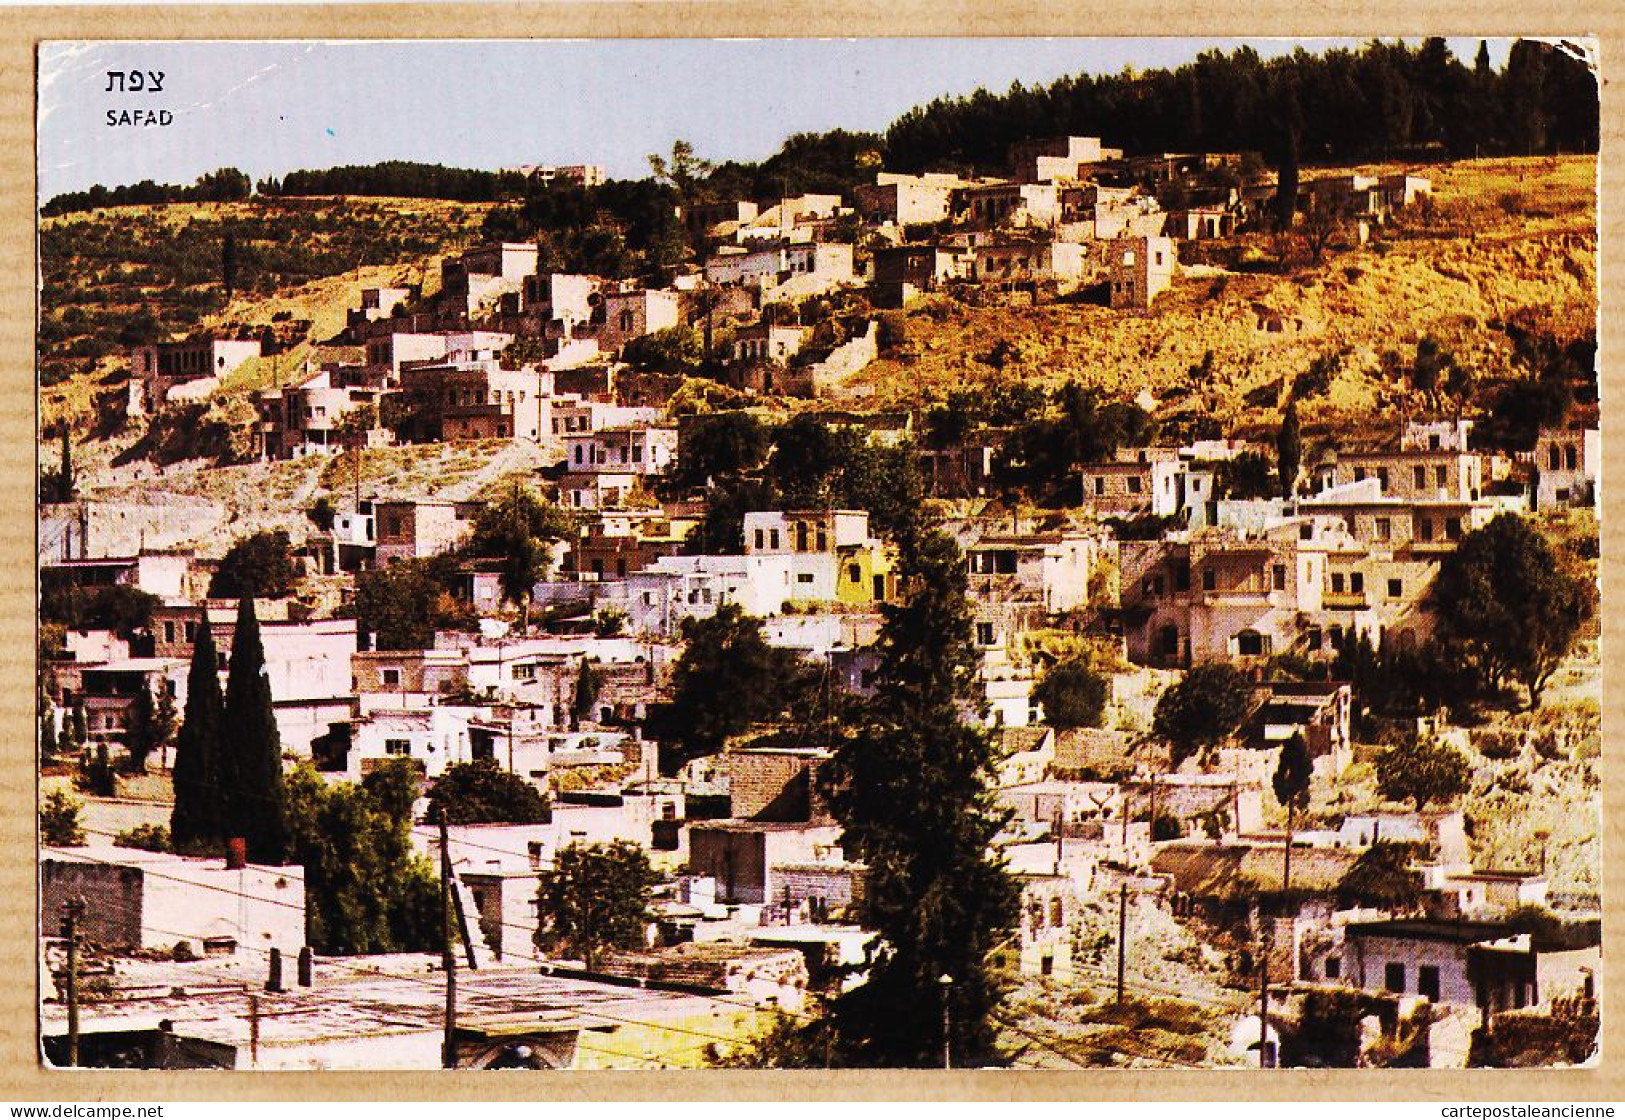 01807 / SAFAD Israël View Of The TOWN 1970s PALPHOT HERZLIA - Israel